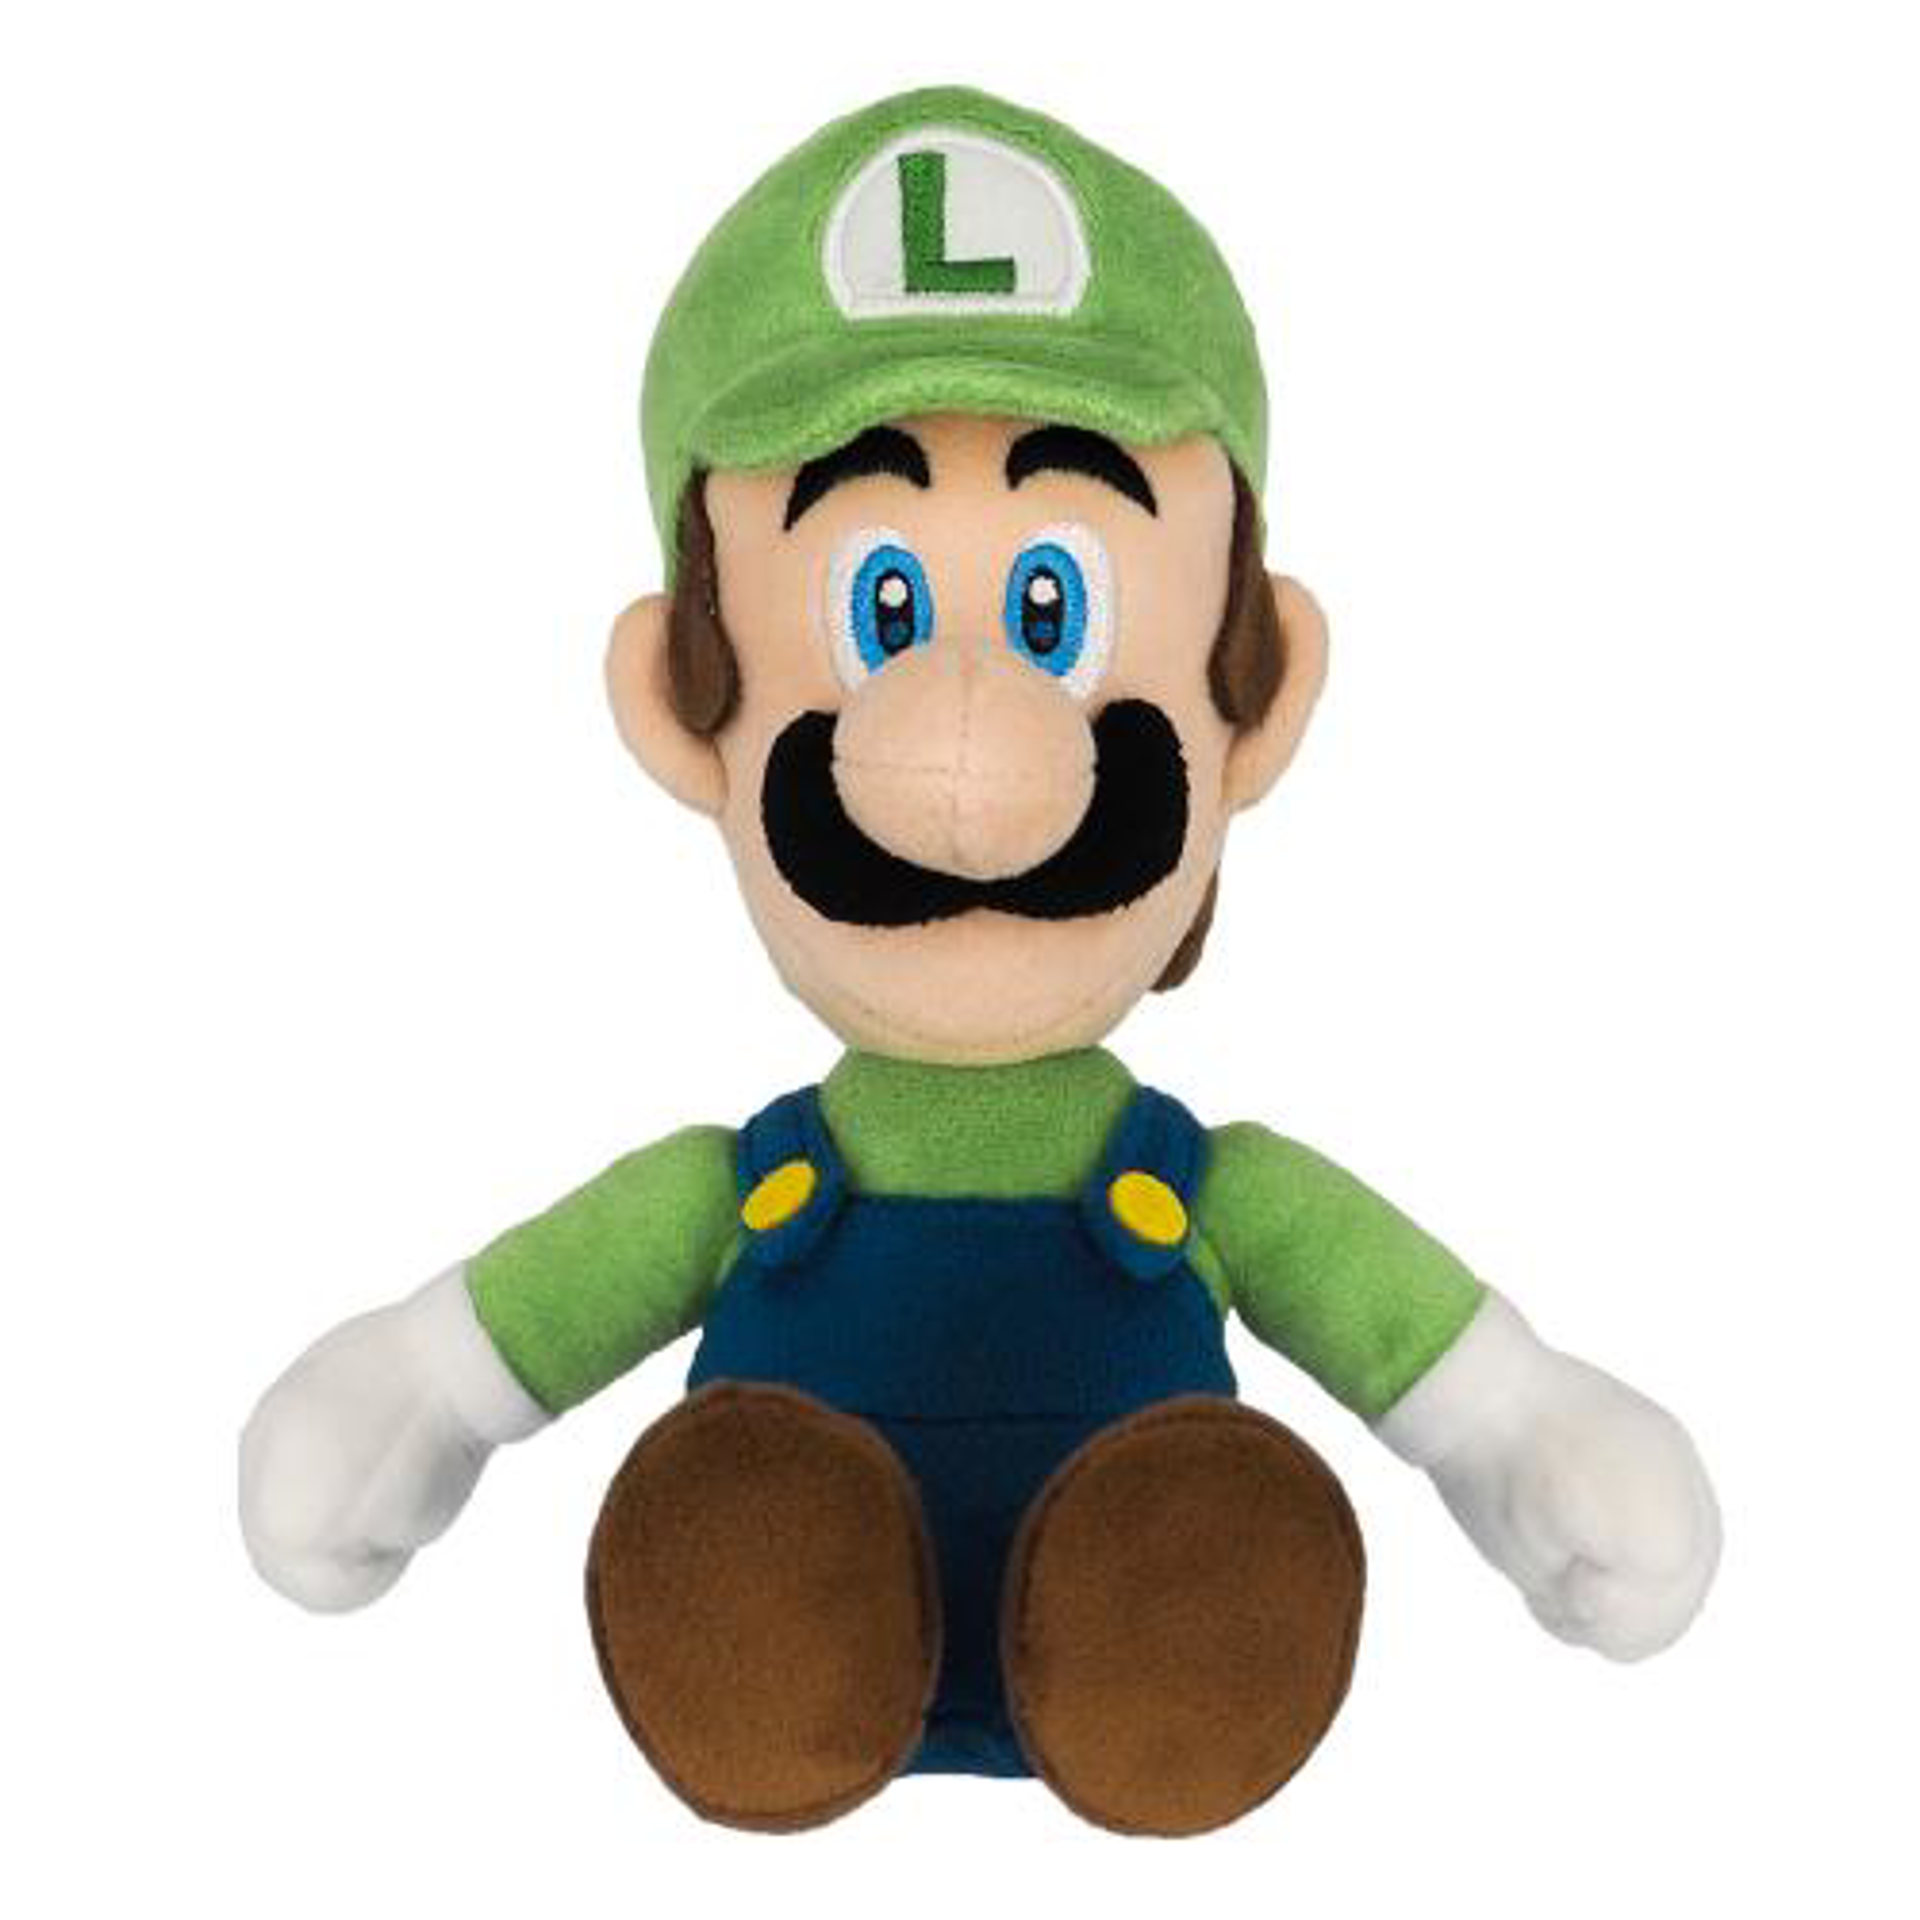 Nintendo Togetherplus - Super Mario - Peluche Luigi 26cm